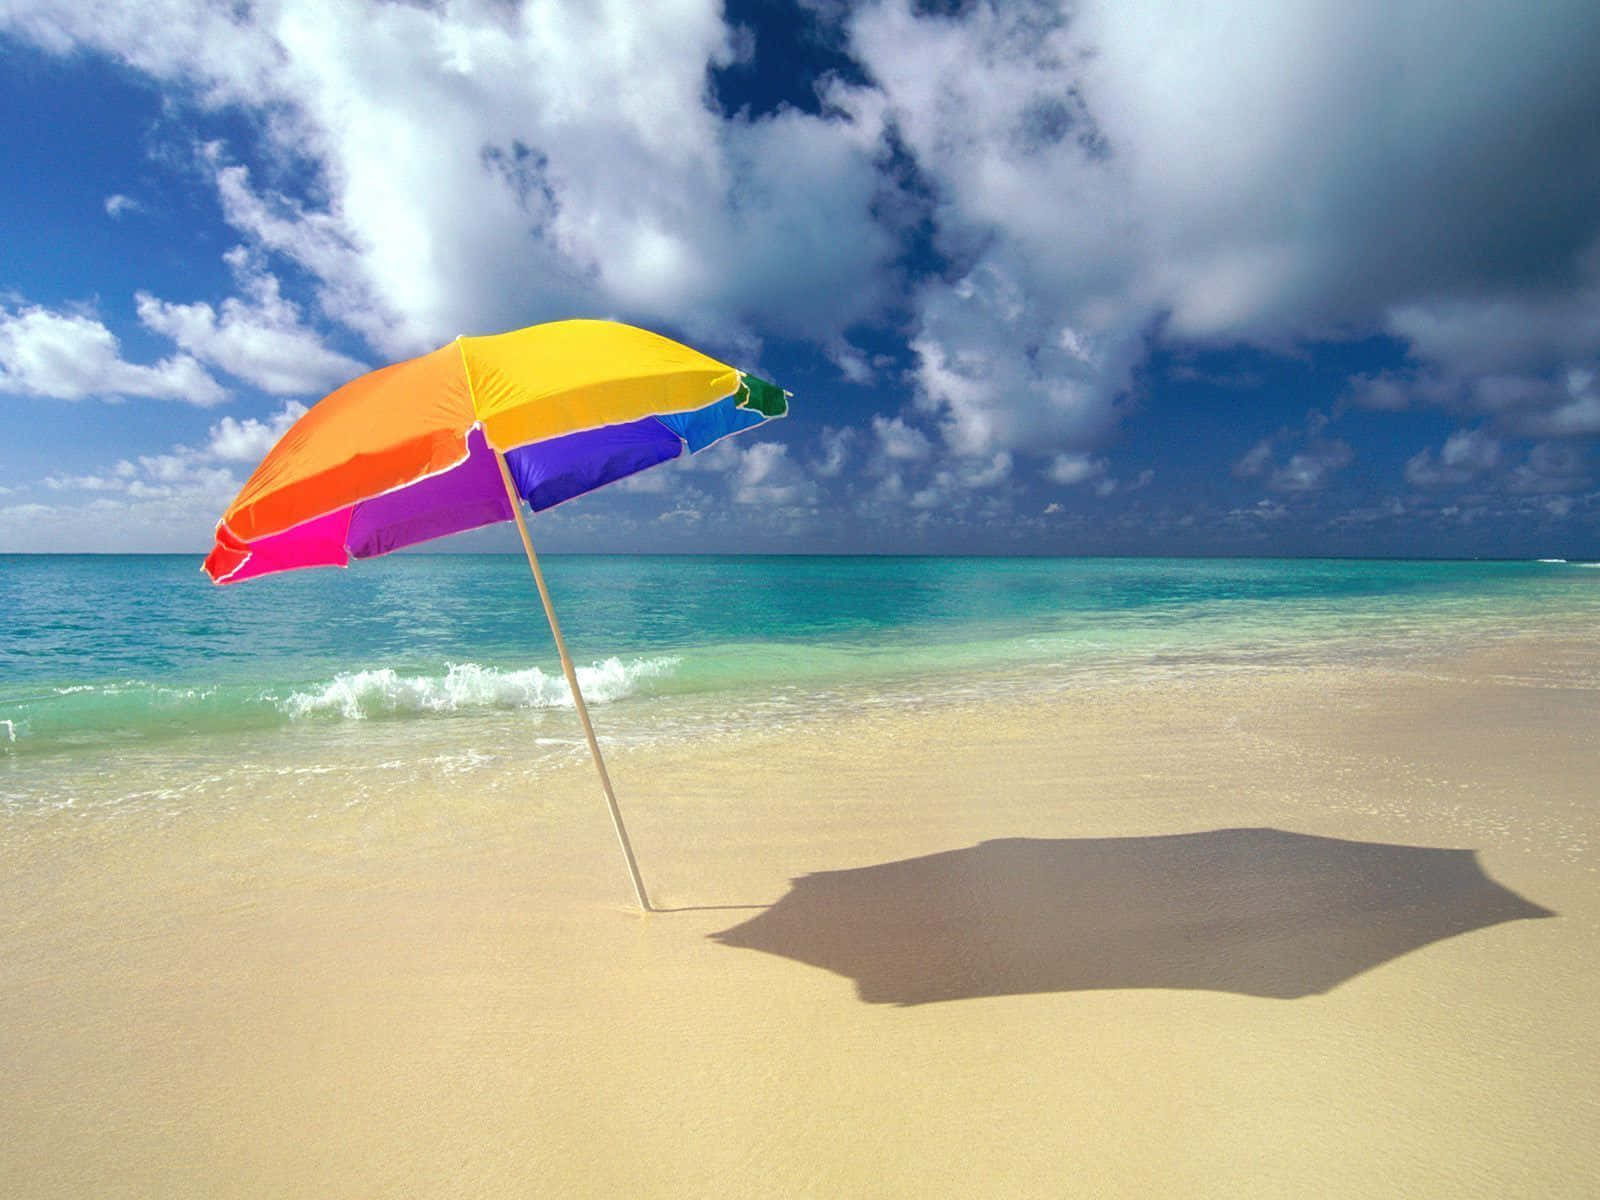 Parasolvibrante En La Playa Proporcionando Sombra En Un Día Soleado Fondo de pantalla